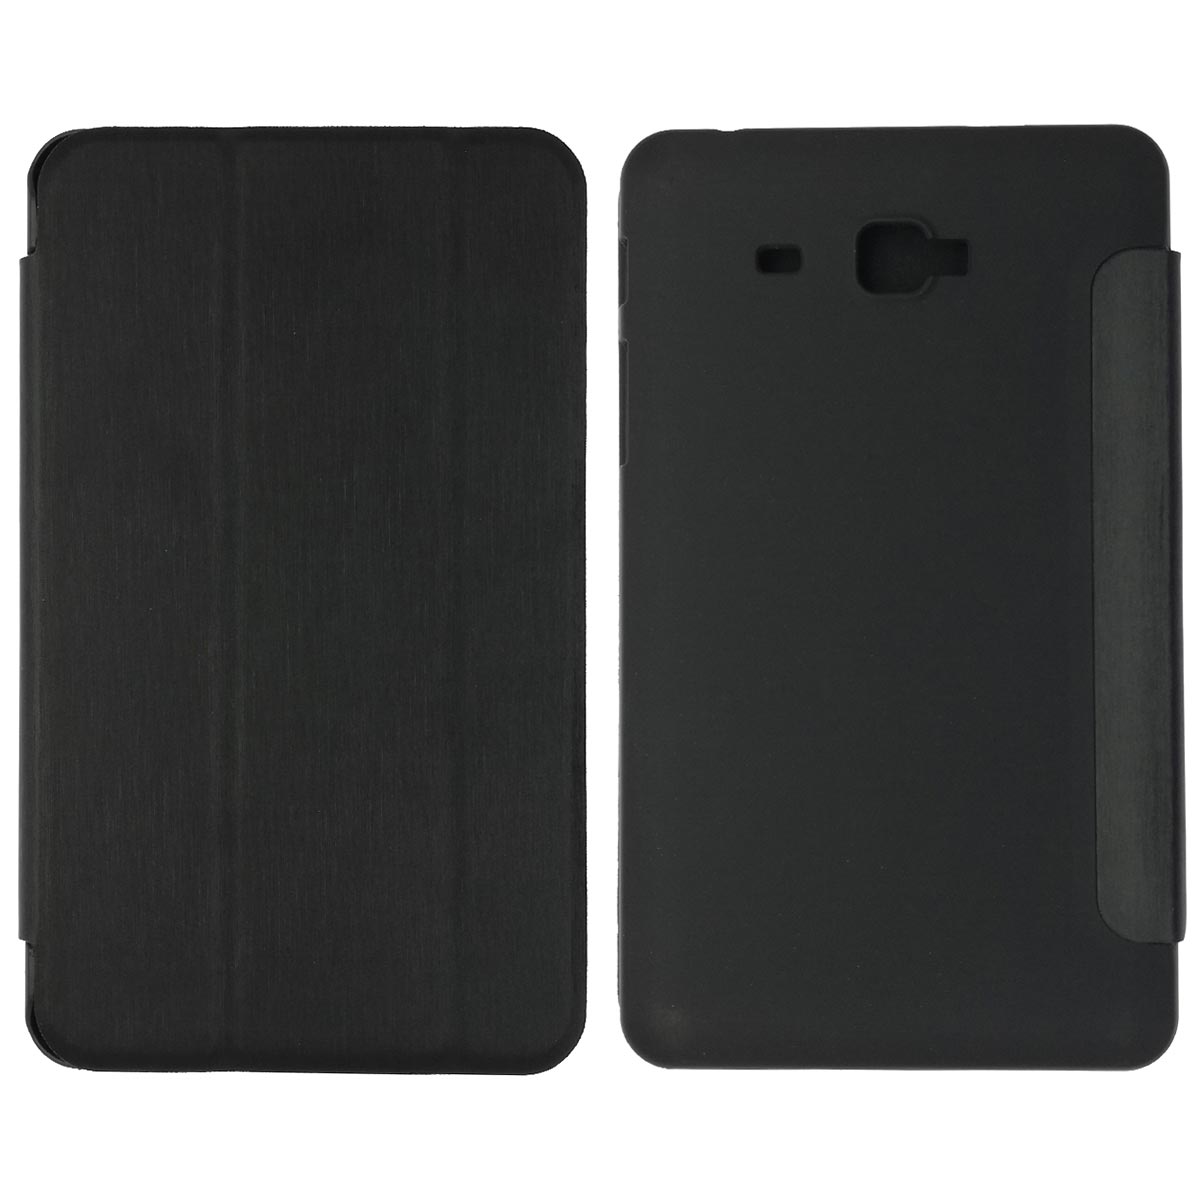 Чехол книжка iRidium для планшета SAMSUNG Galaxy Tab A 7.0 (SM-T280, SM-T285), тканевая основа, цвет черный